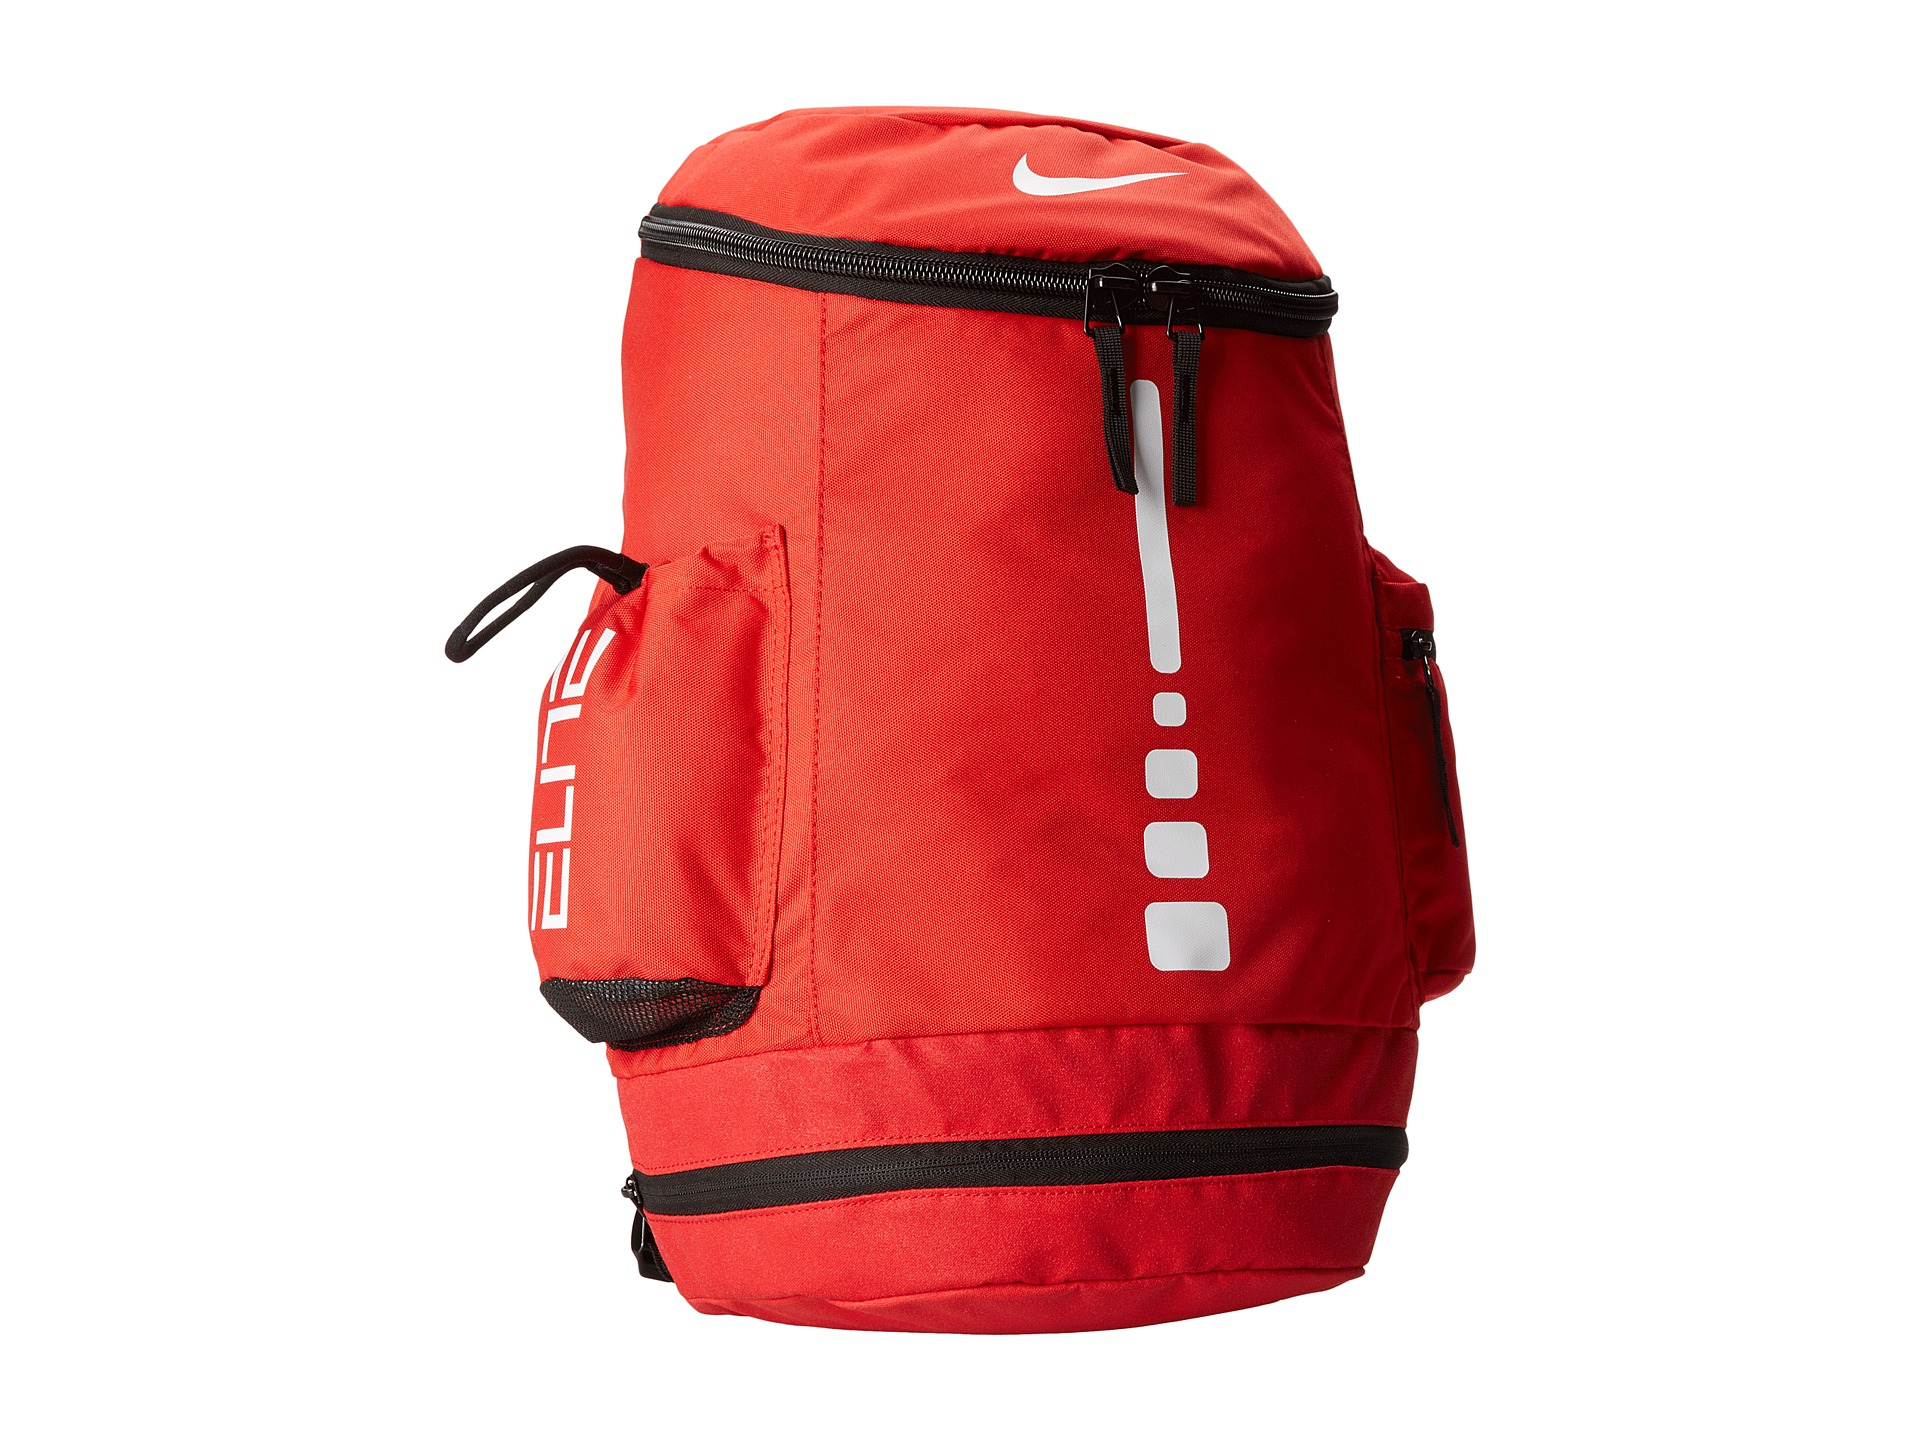 Nike Hoops Elite Team Backpack in University Red/Black/White (Red) for Men - Lyst